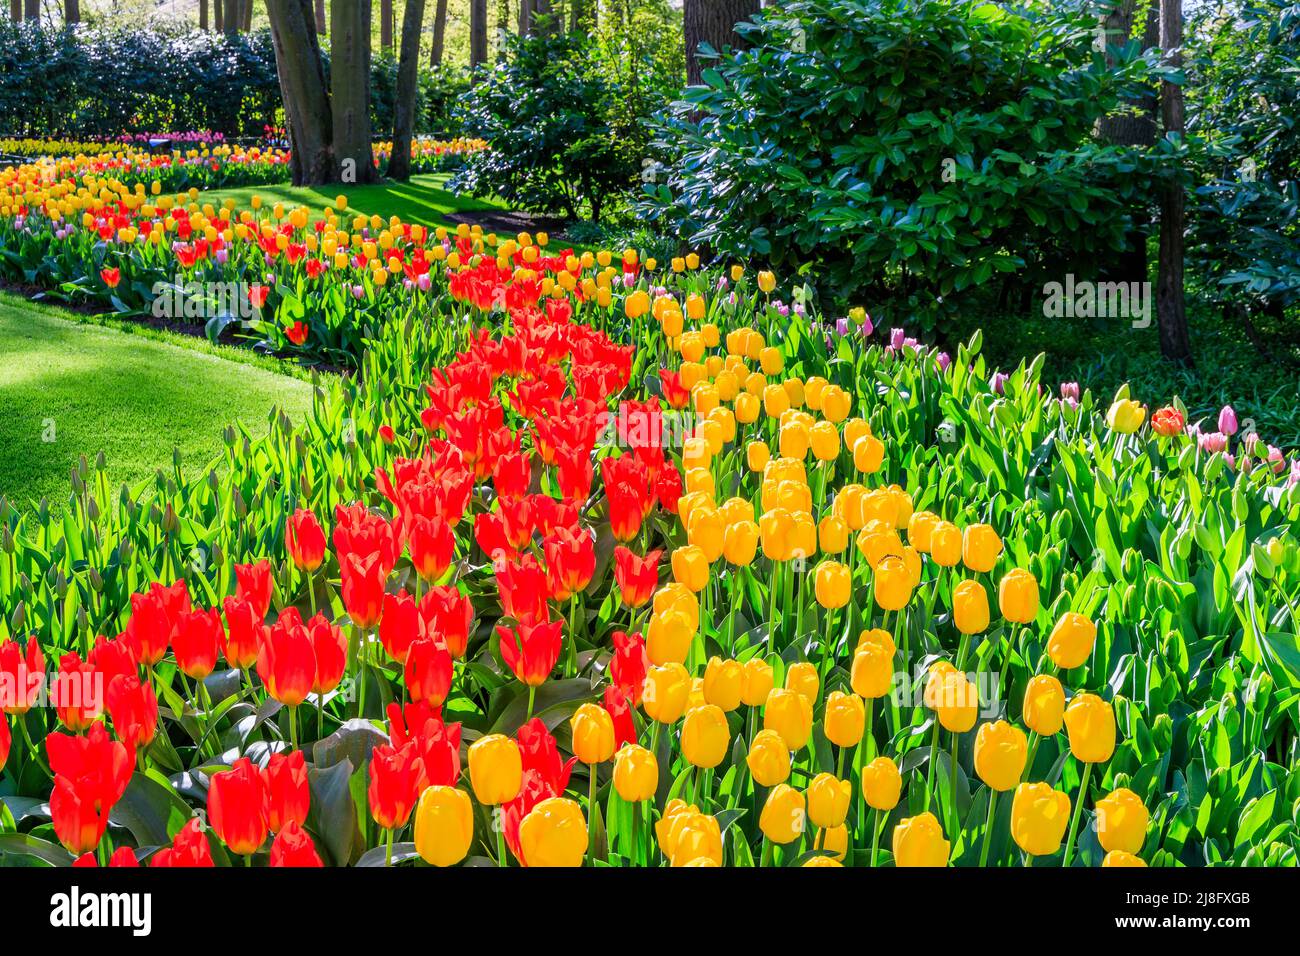 Florece tulipanes coloridos floridos en el jardín de flores públicas de Keukenhof. Lisse, Holanda, Países Bajos. Foto de stock